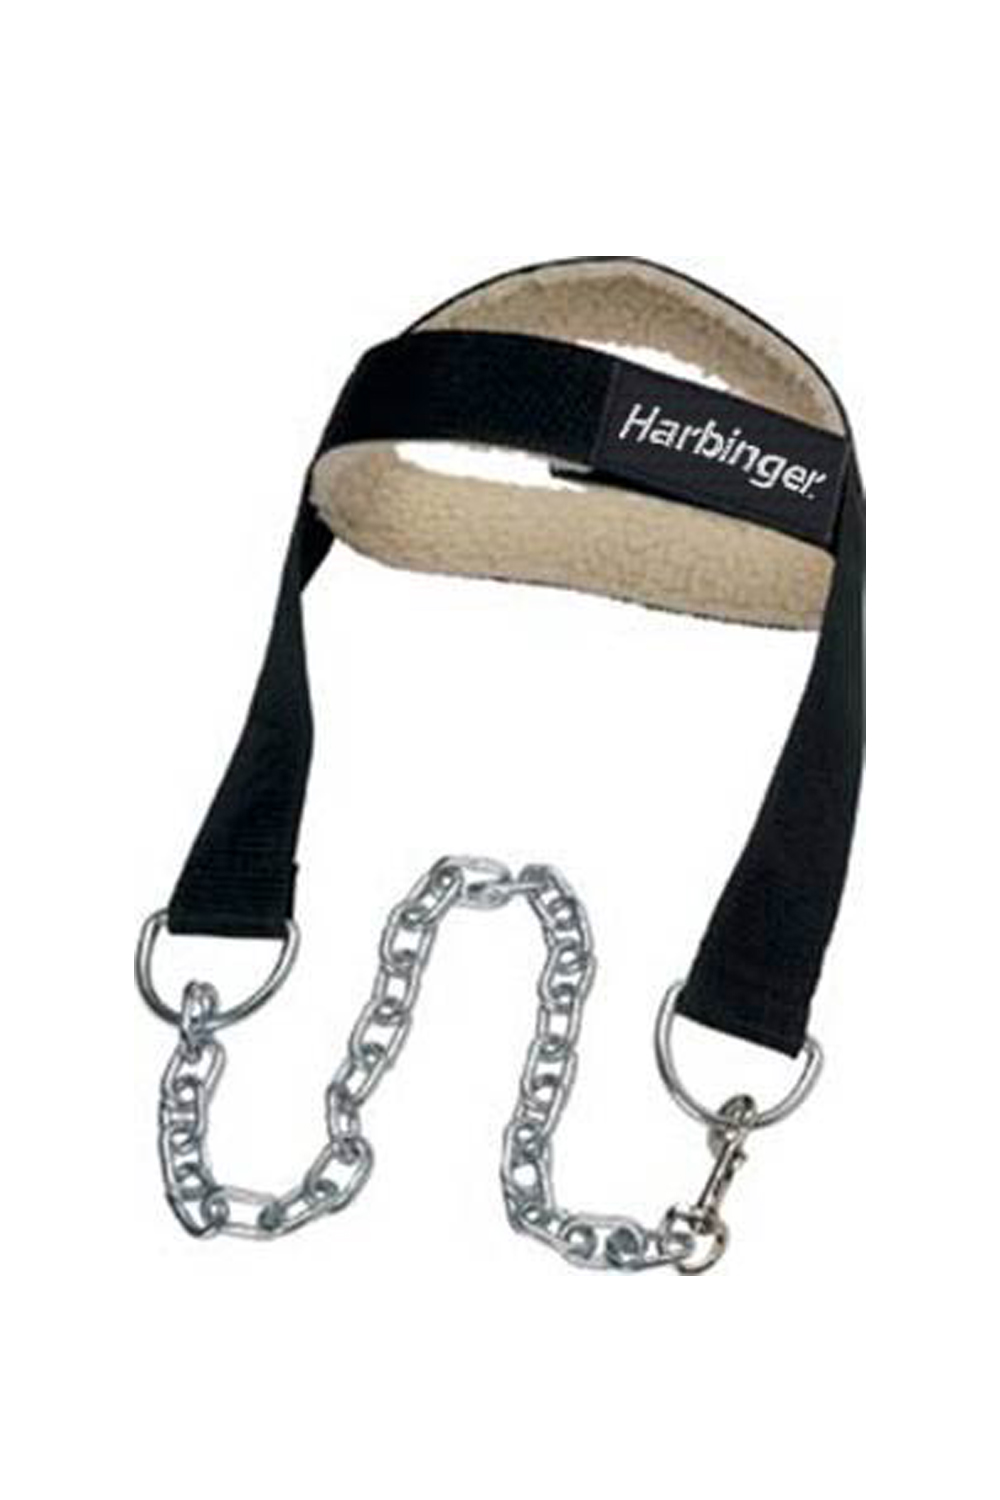 Harbinger Fitness Harbinger Nylon Head Harness